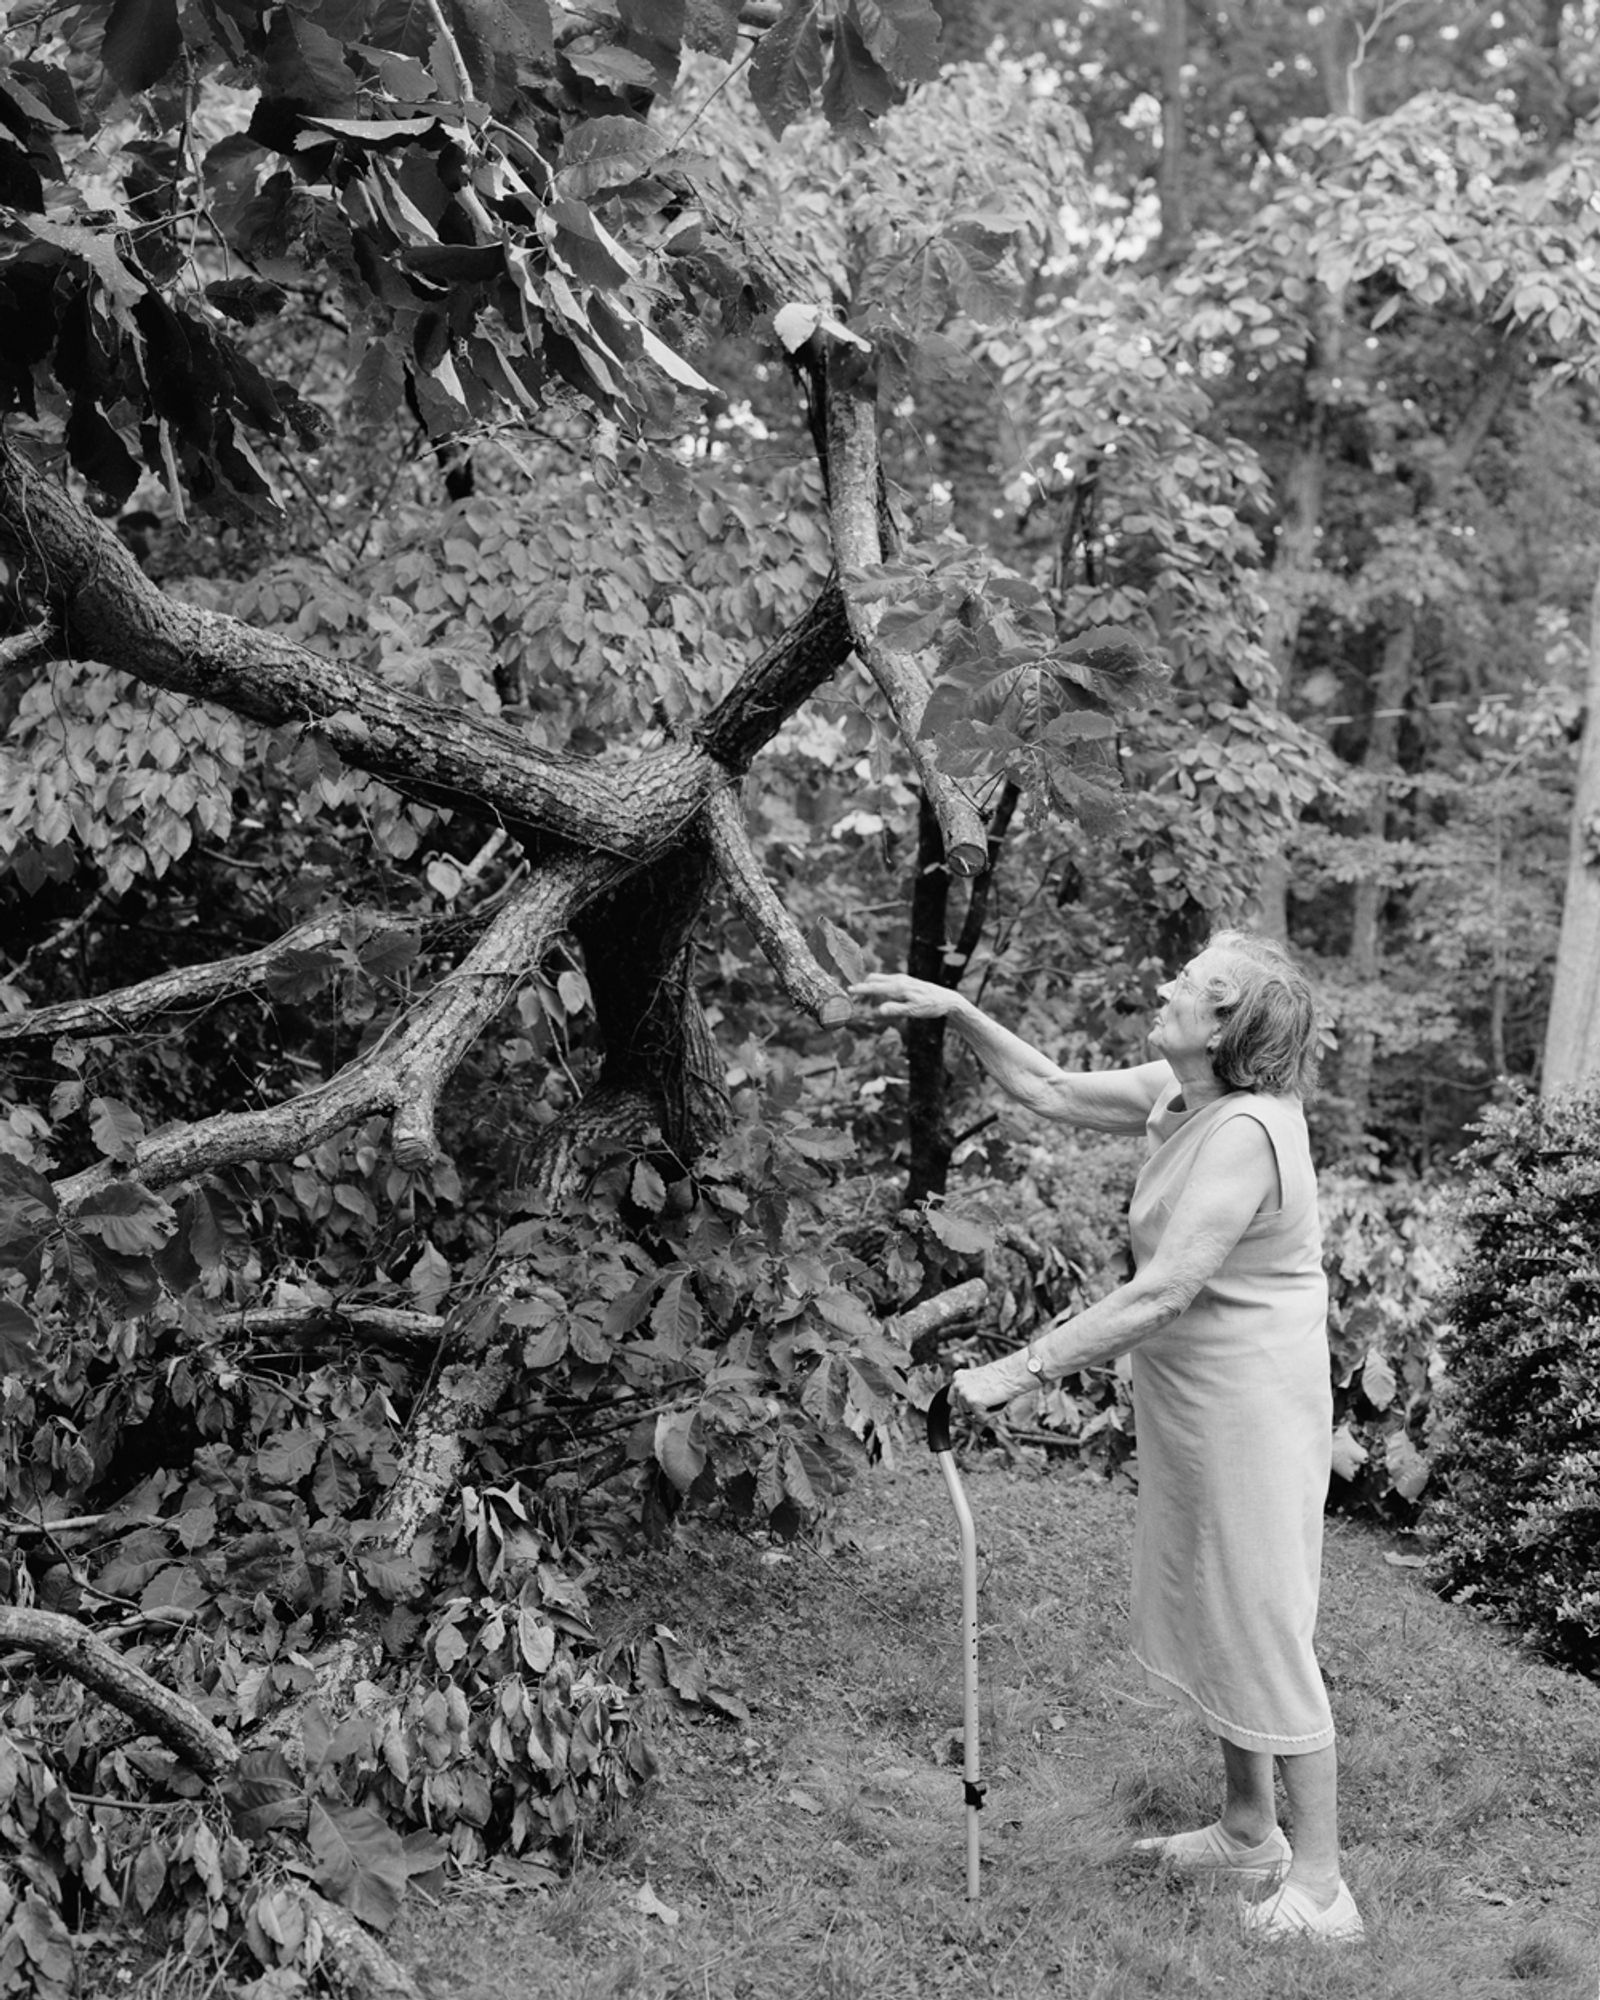 © Susan Worsham - "Margaret with Broken Chestnut Oak"